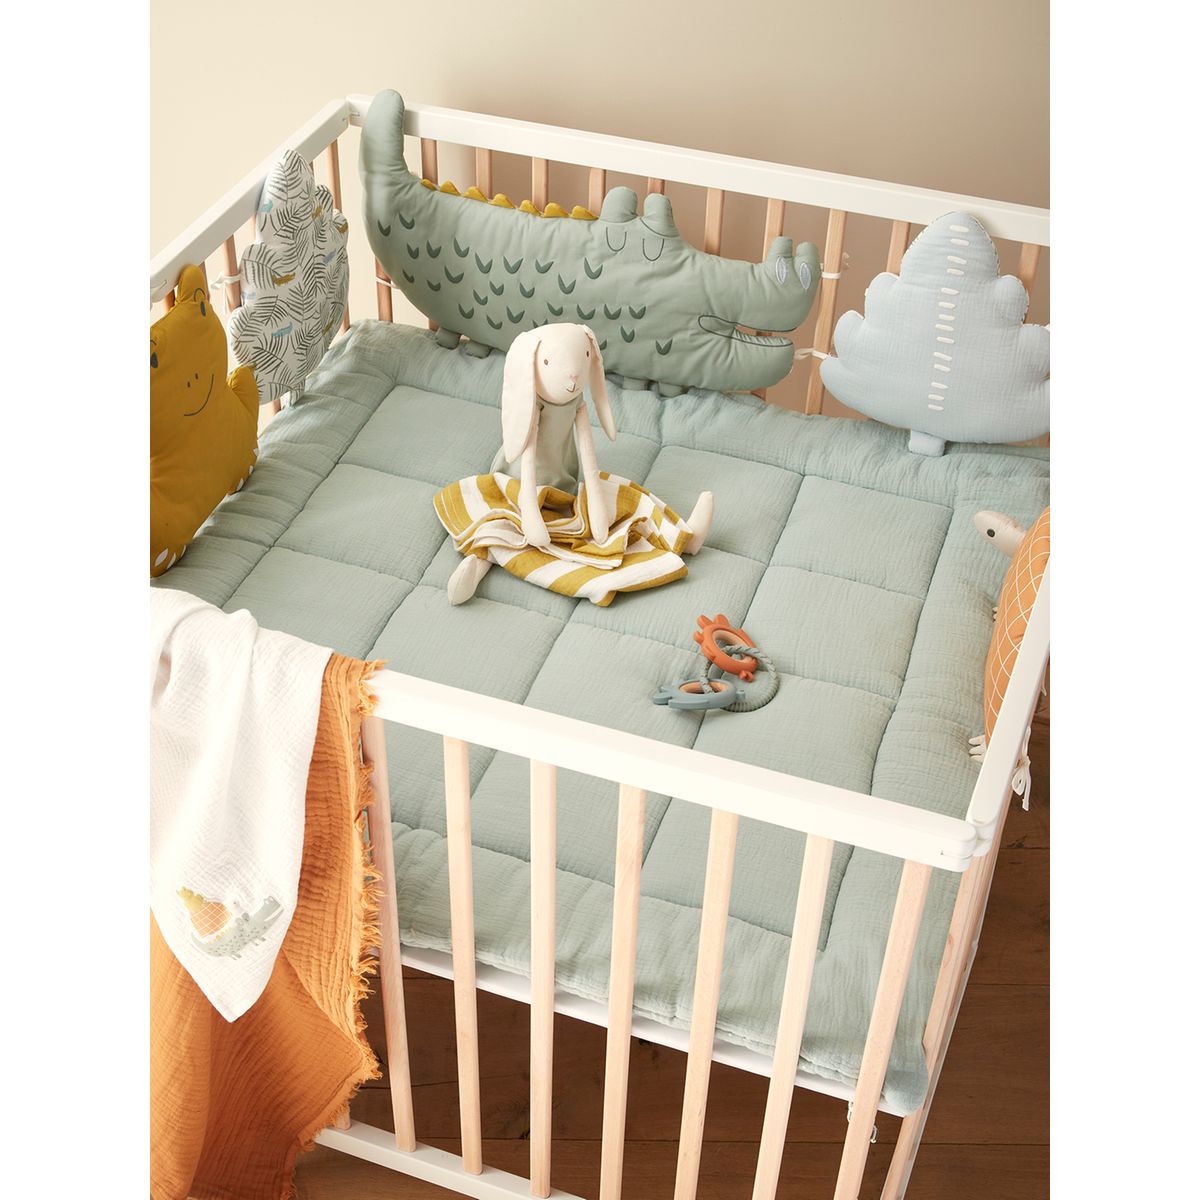 Tour de lit bébé garçon en Liberty étoiles multicolores et percale de coton